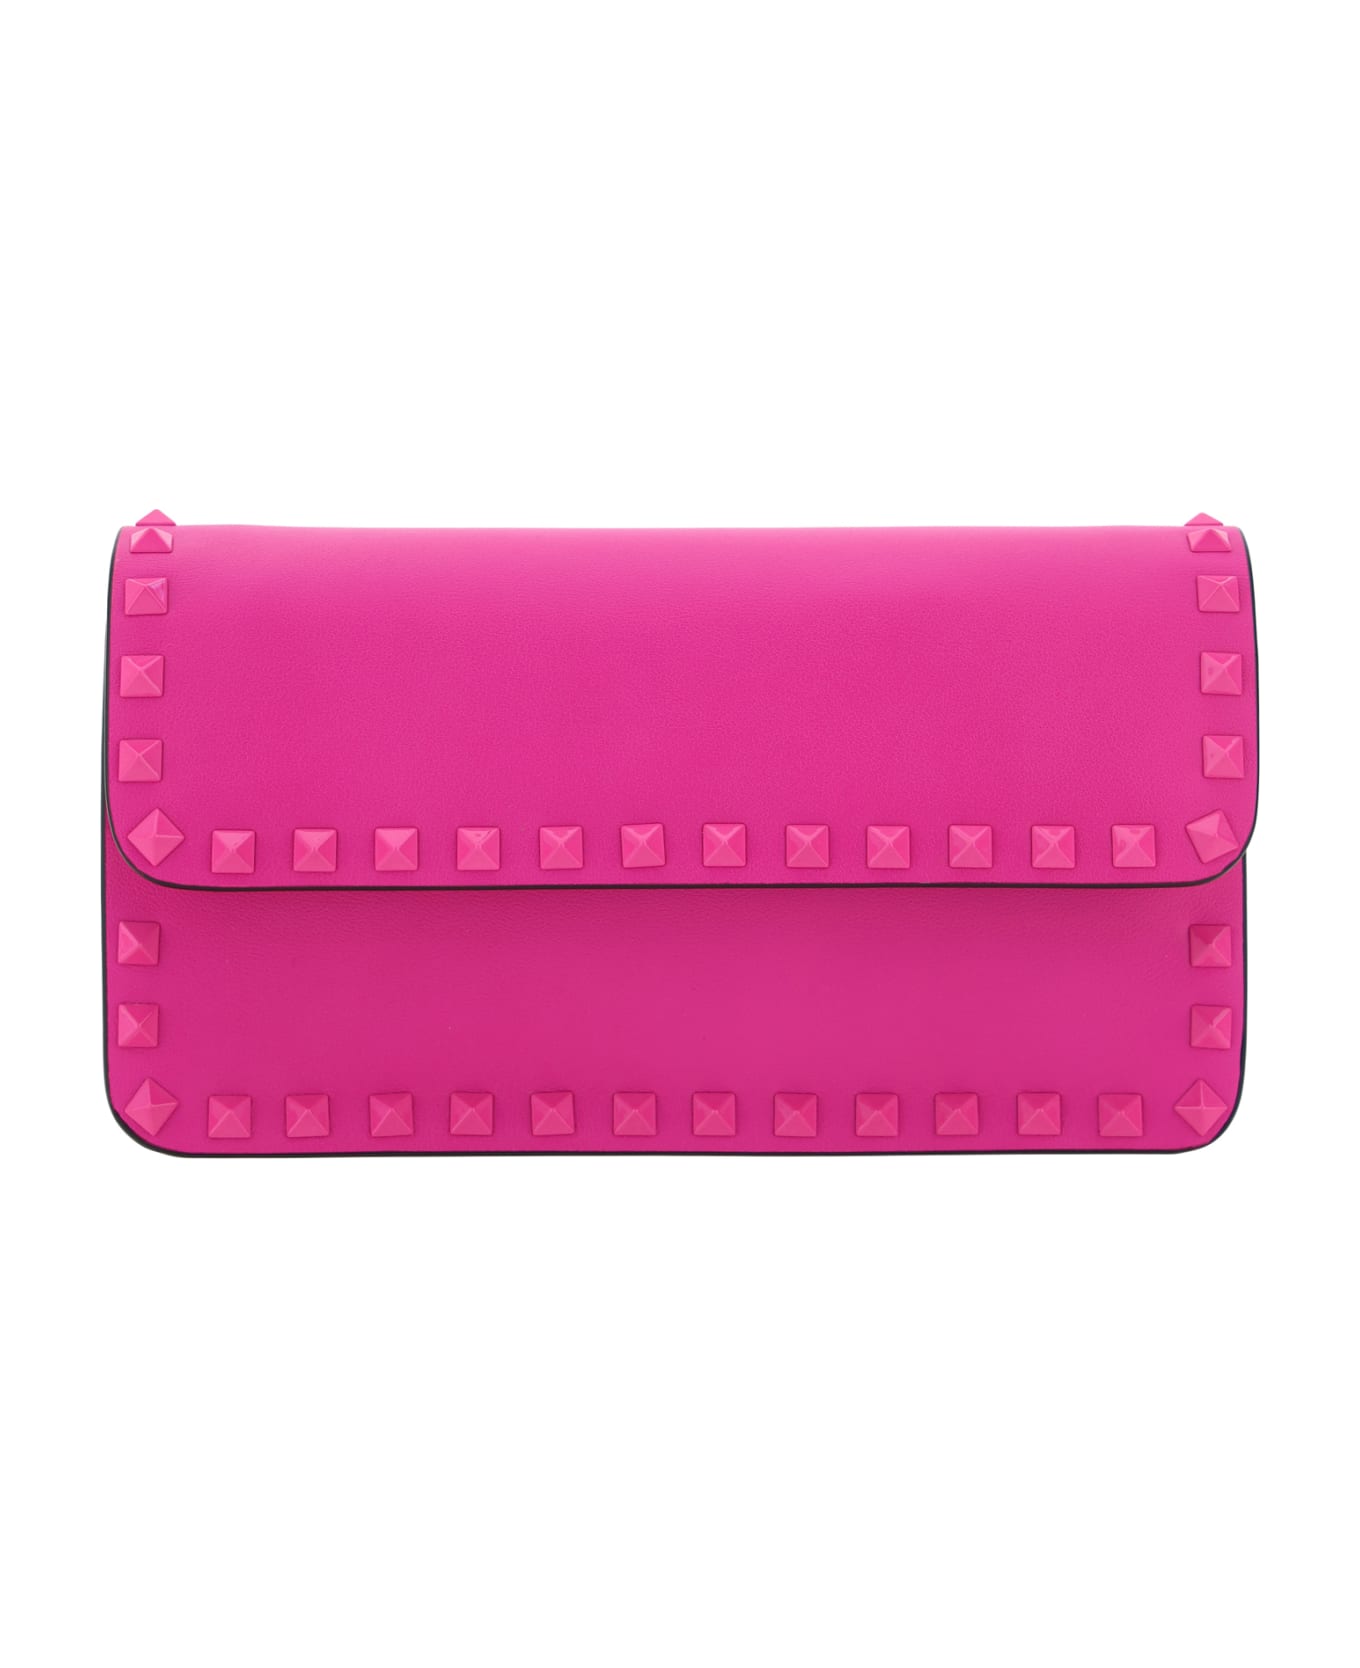 Valentino Garavani Rockstud Handbag - Pink Pp クラッチバッグ